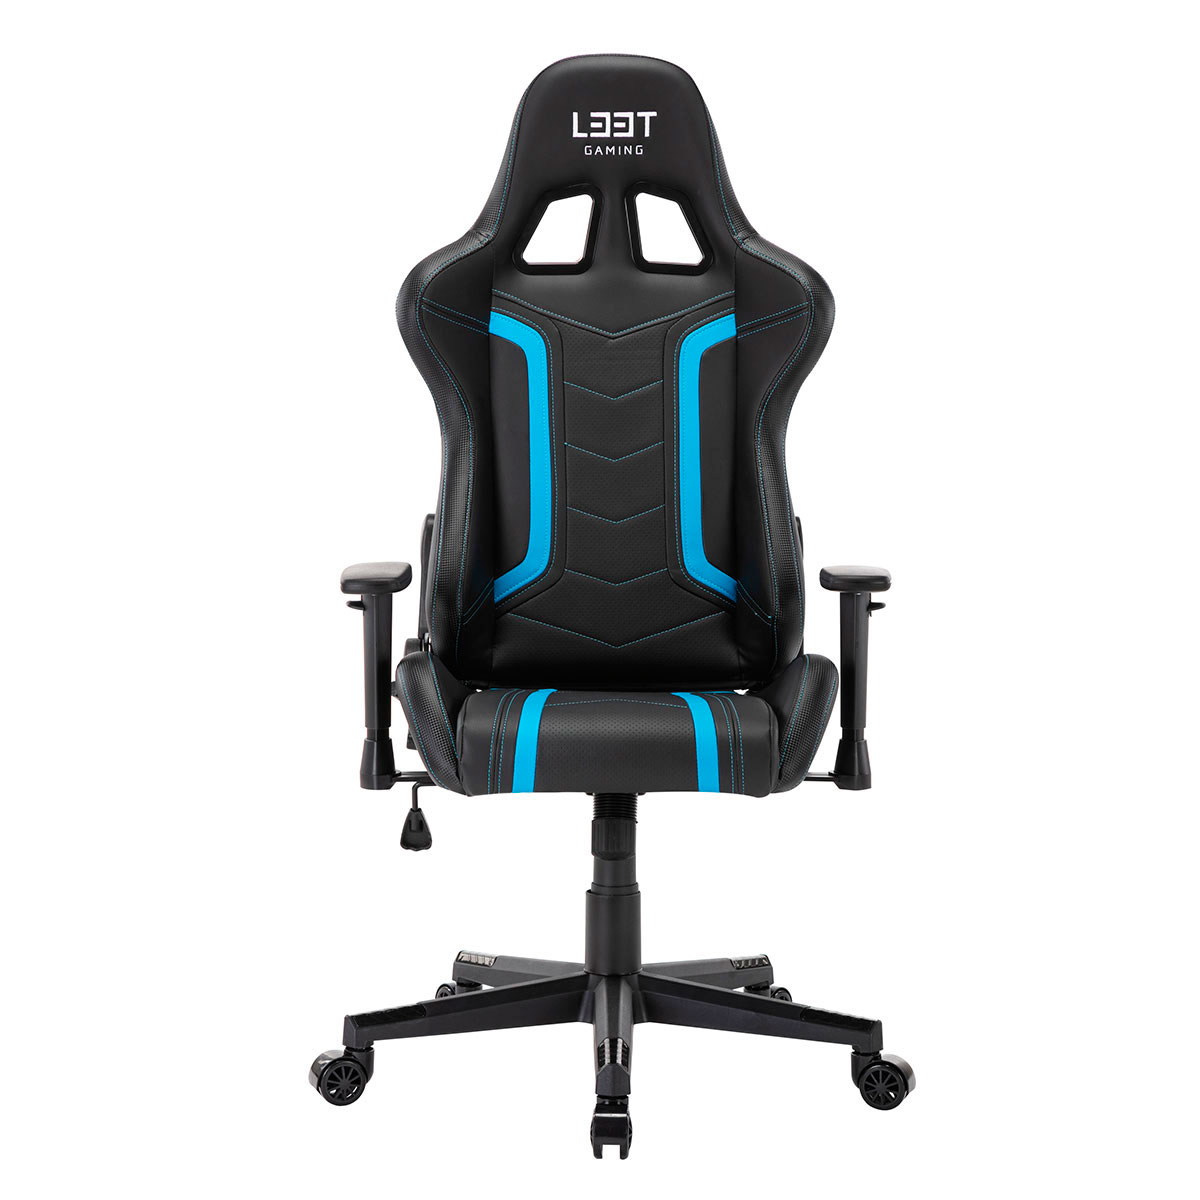 marts Arving flaske L33T Energy Gaming stol (PU læder) Sort/Blå